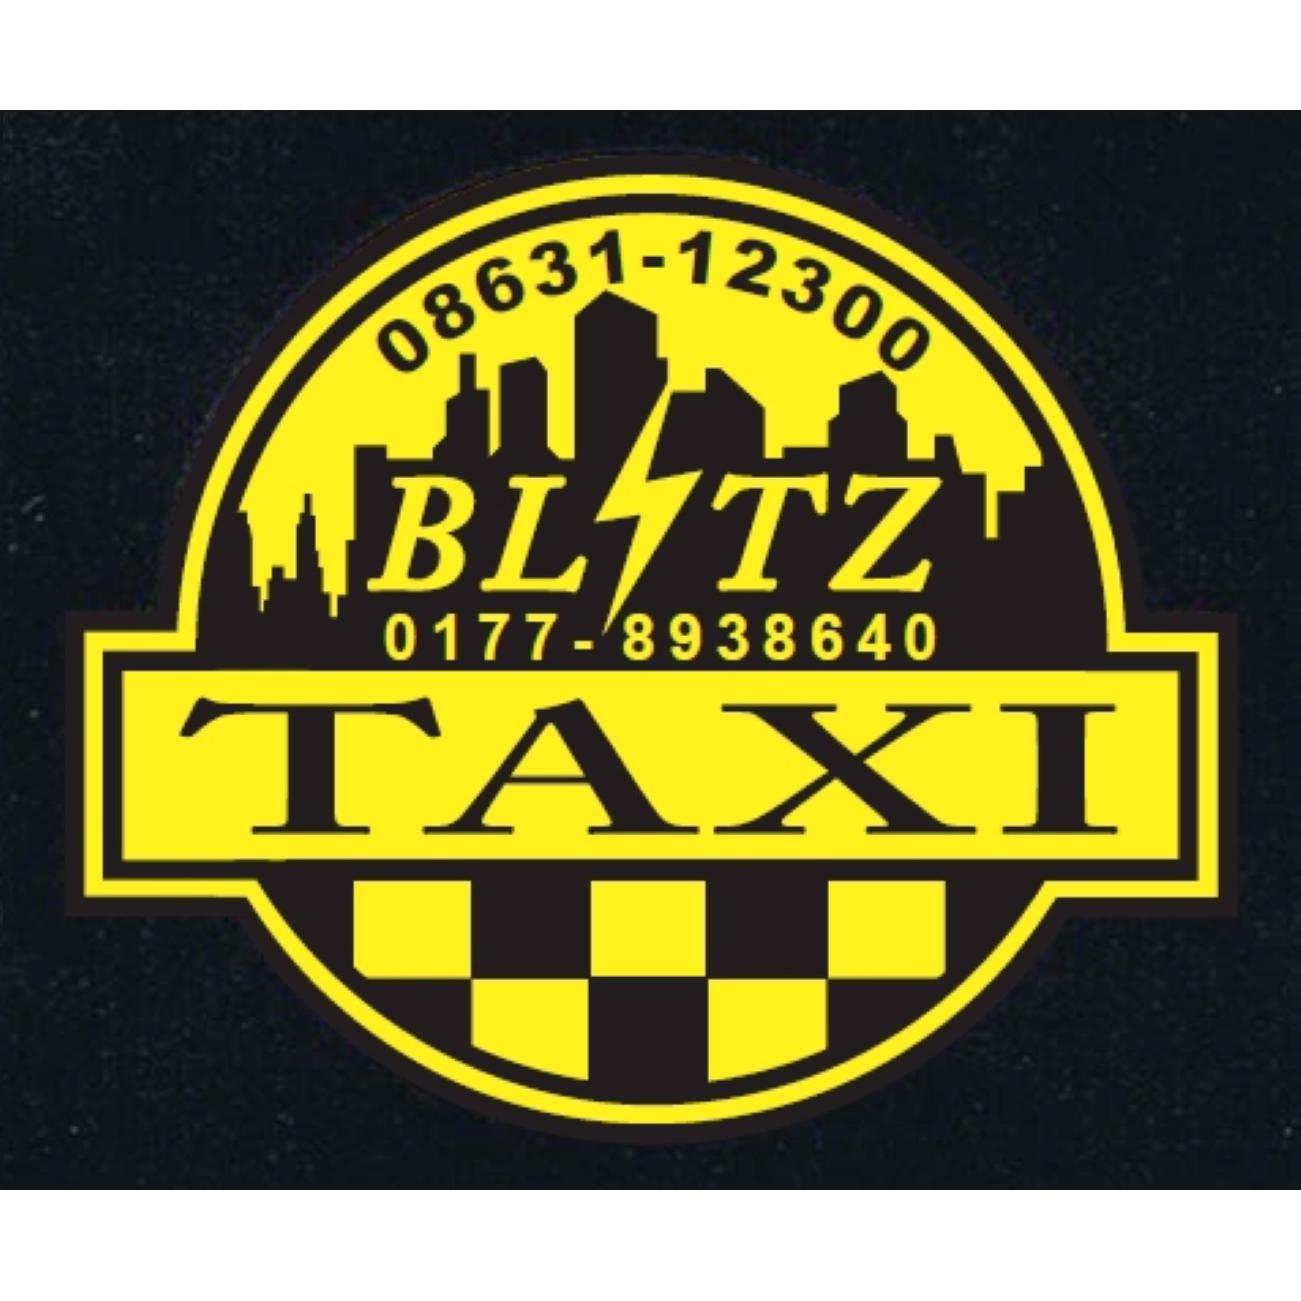 Blitz Taxi in Mühldorf am Inn - Logo